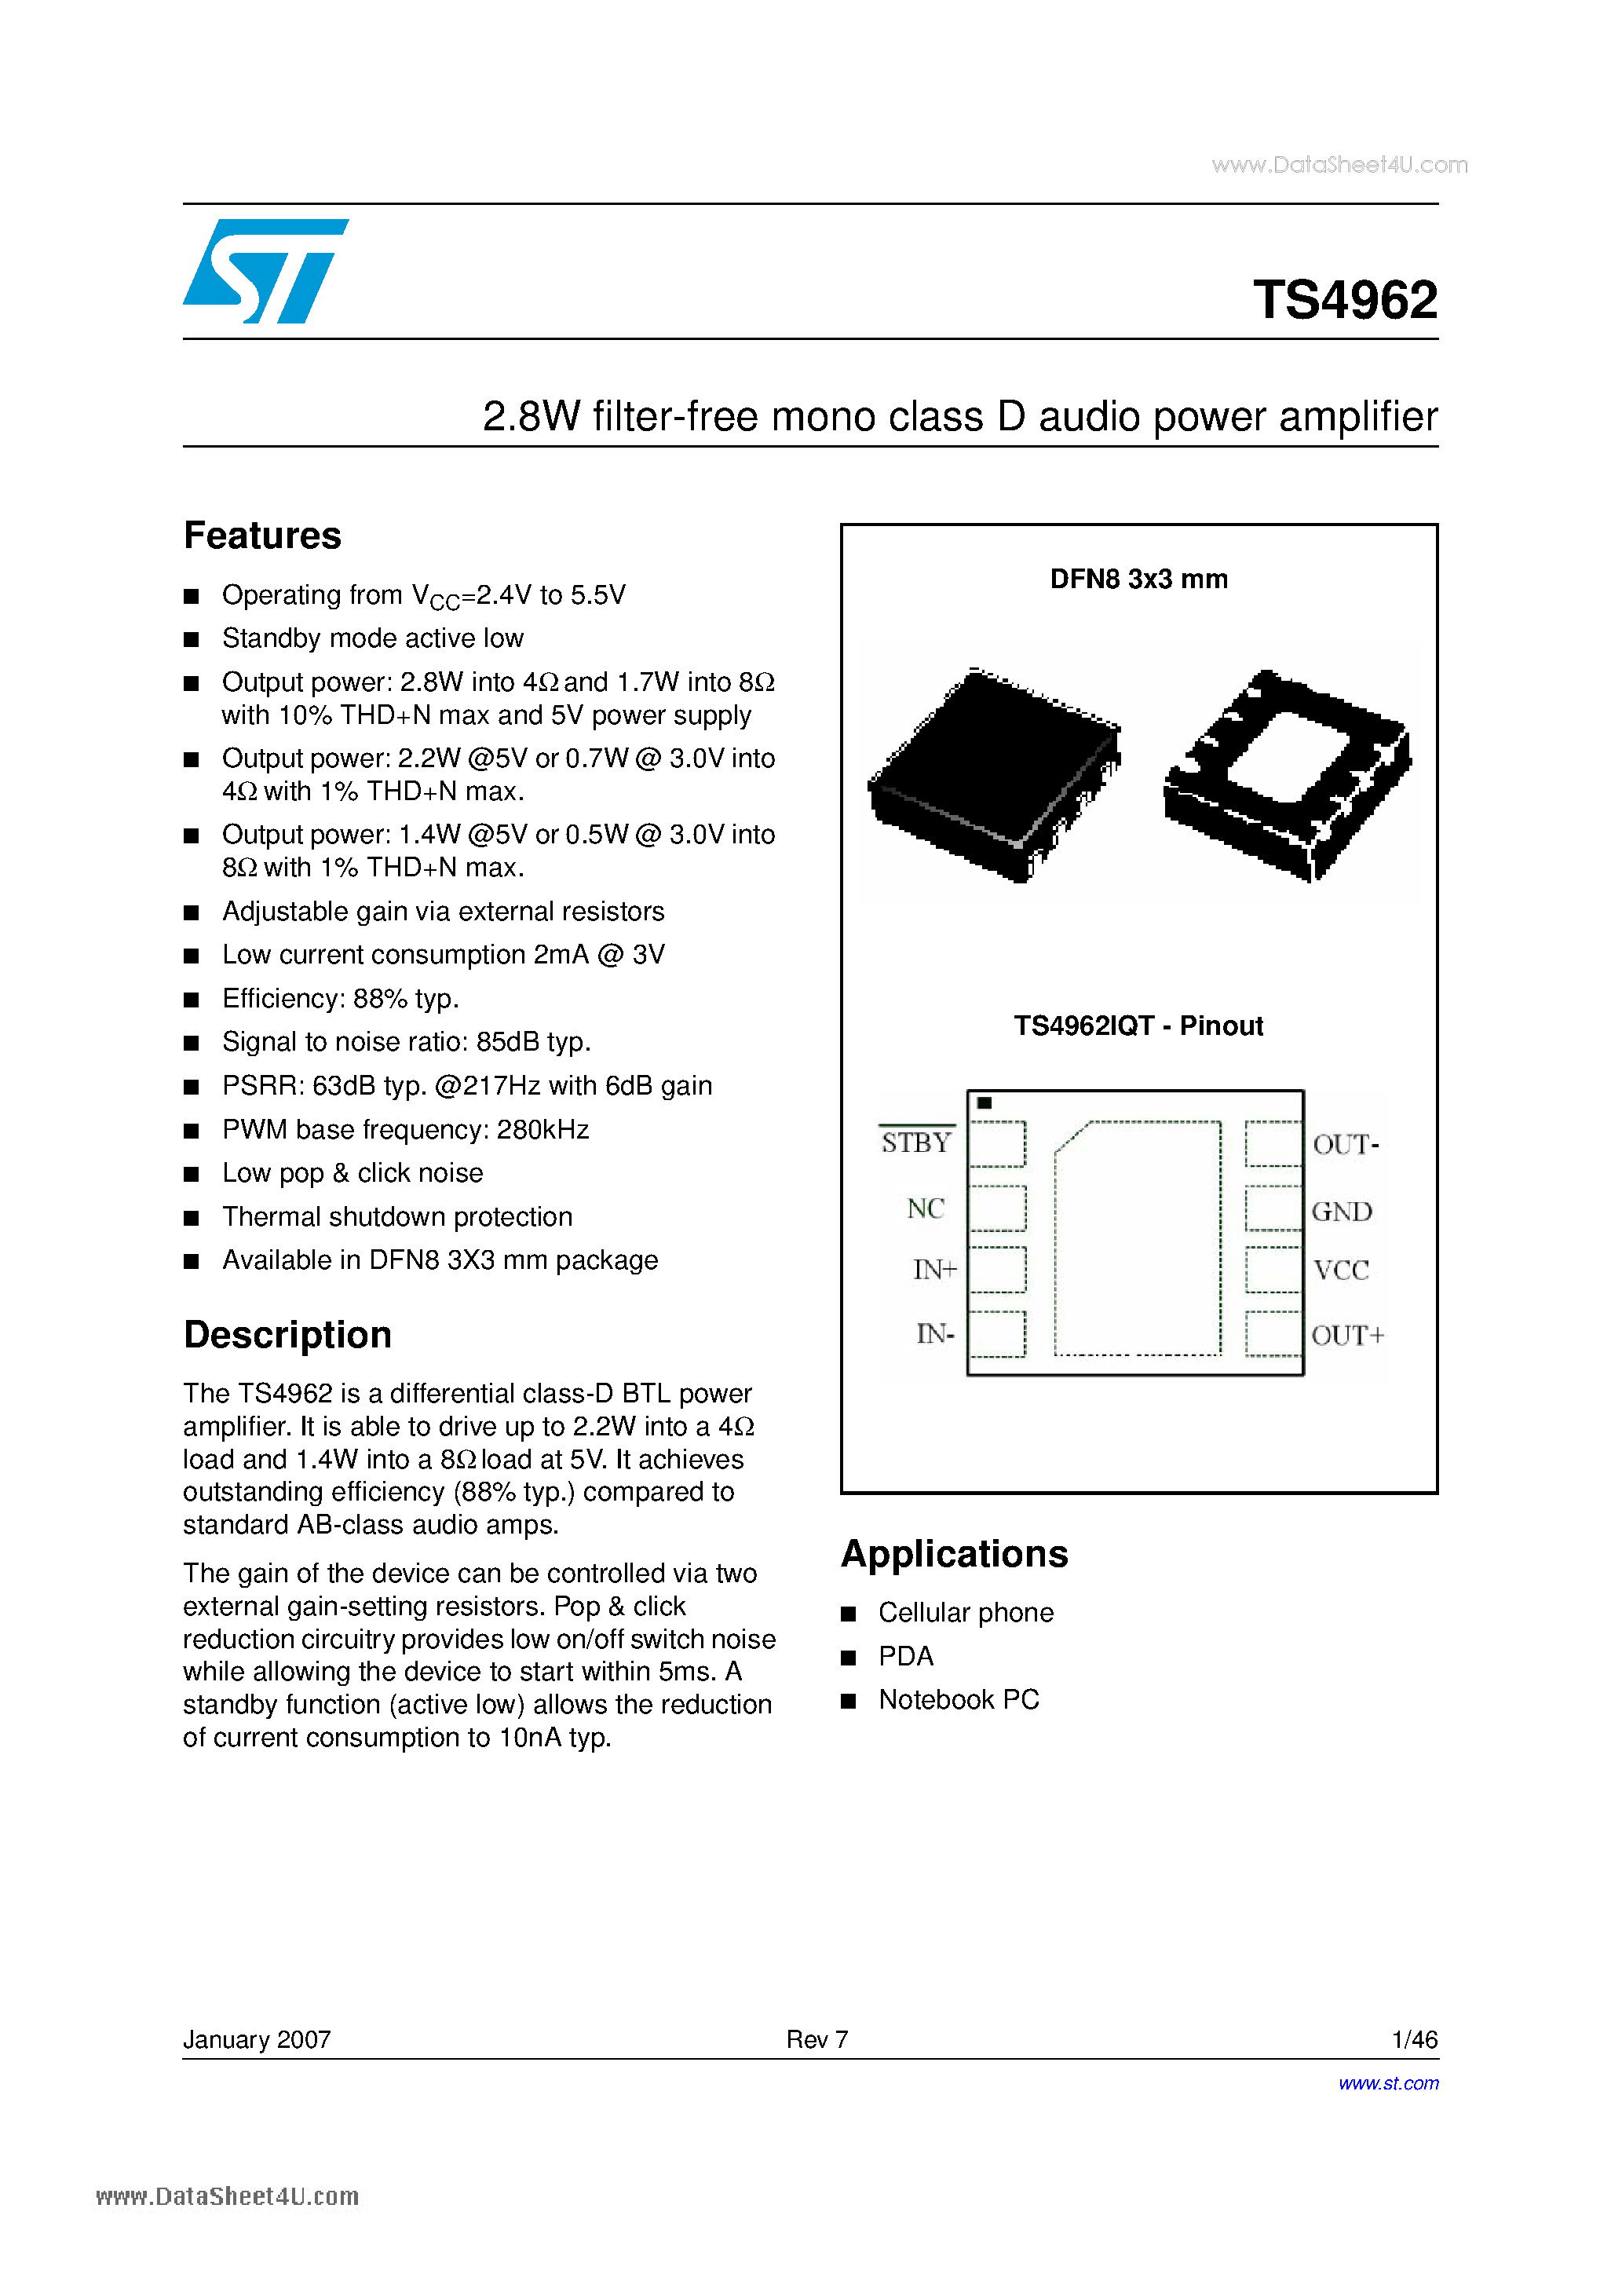 Даташит TS4962 - 2.8W filter-free mono class D audio power amplifier страница 1